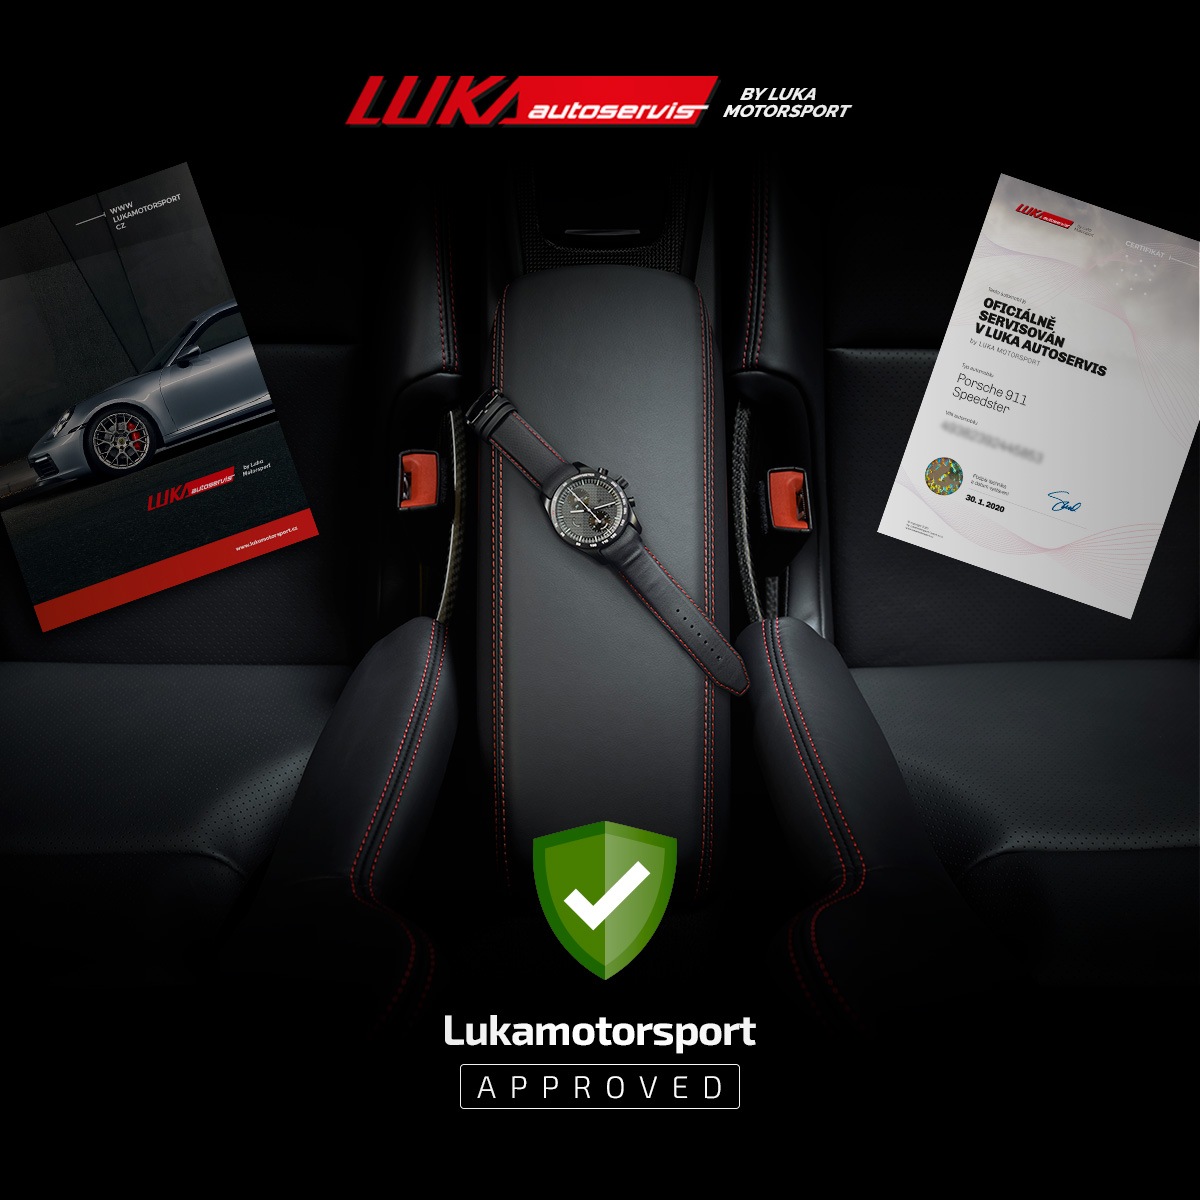 Lukamotorsport sportovní vozy na prodej